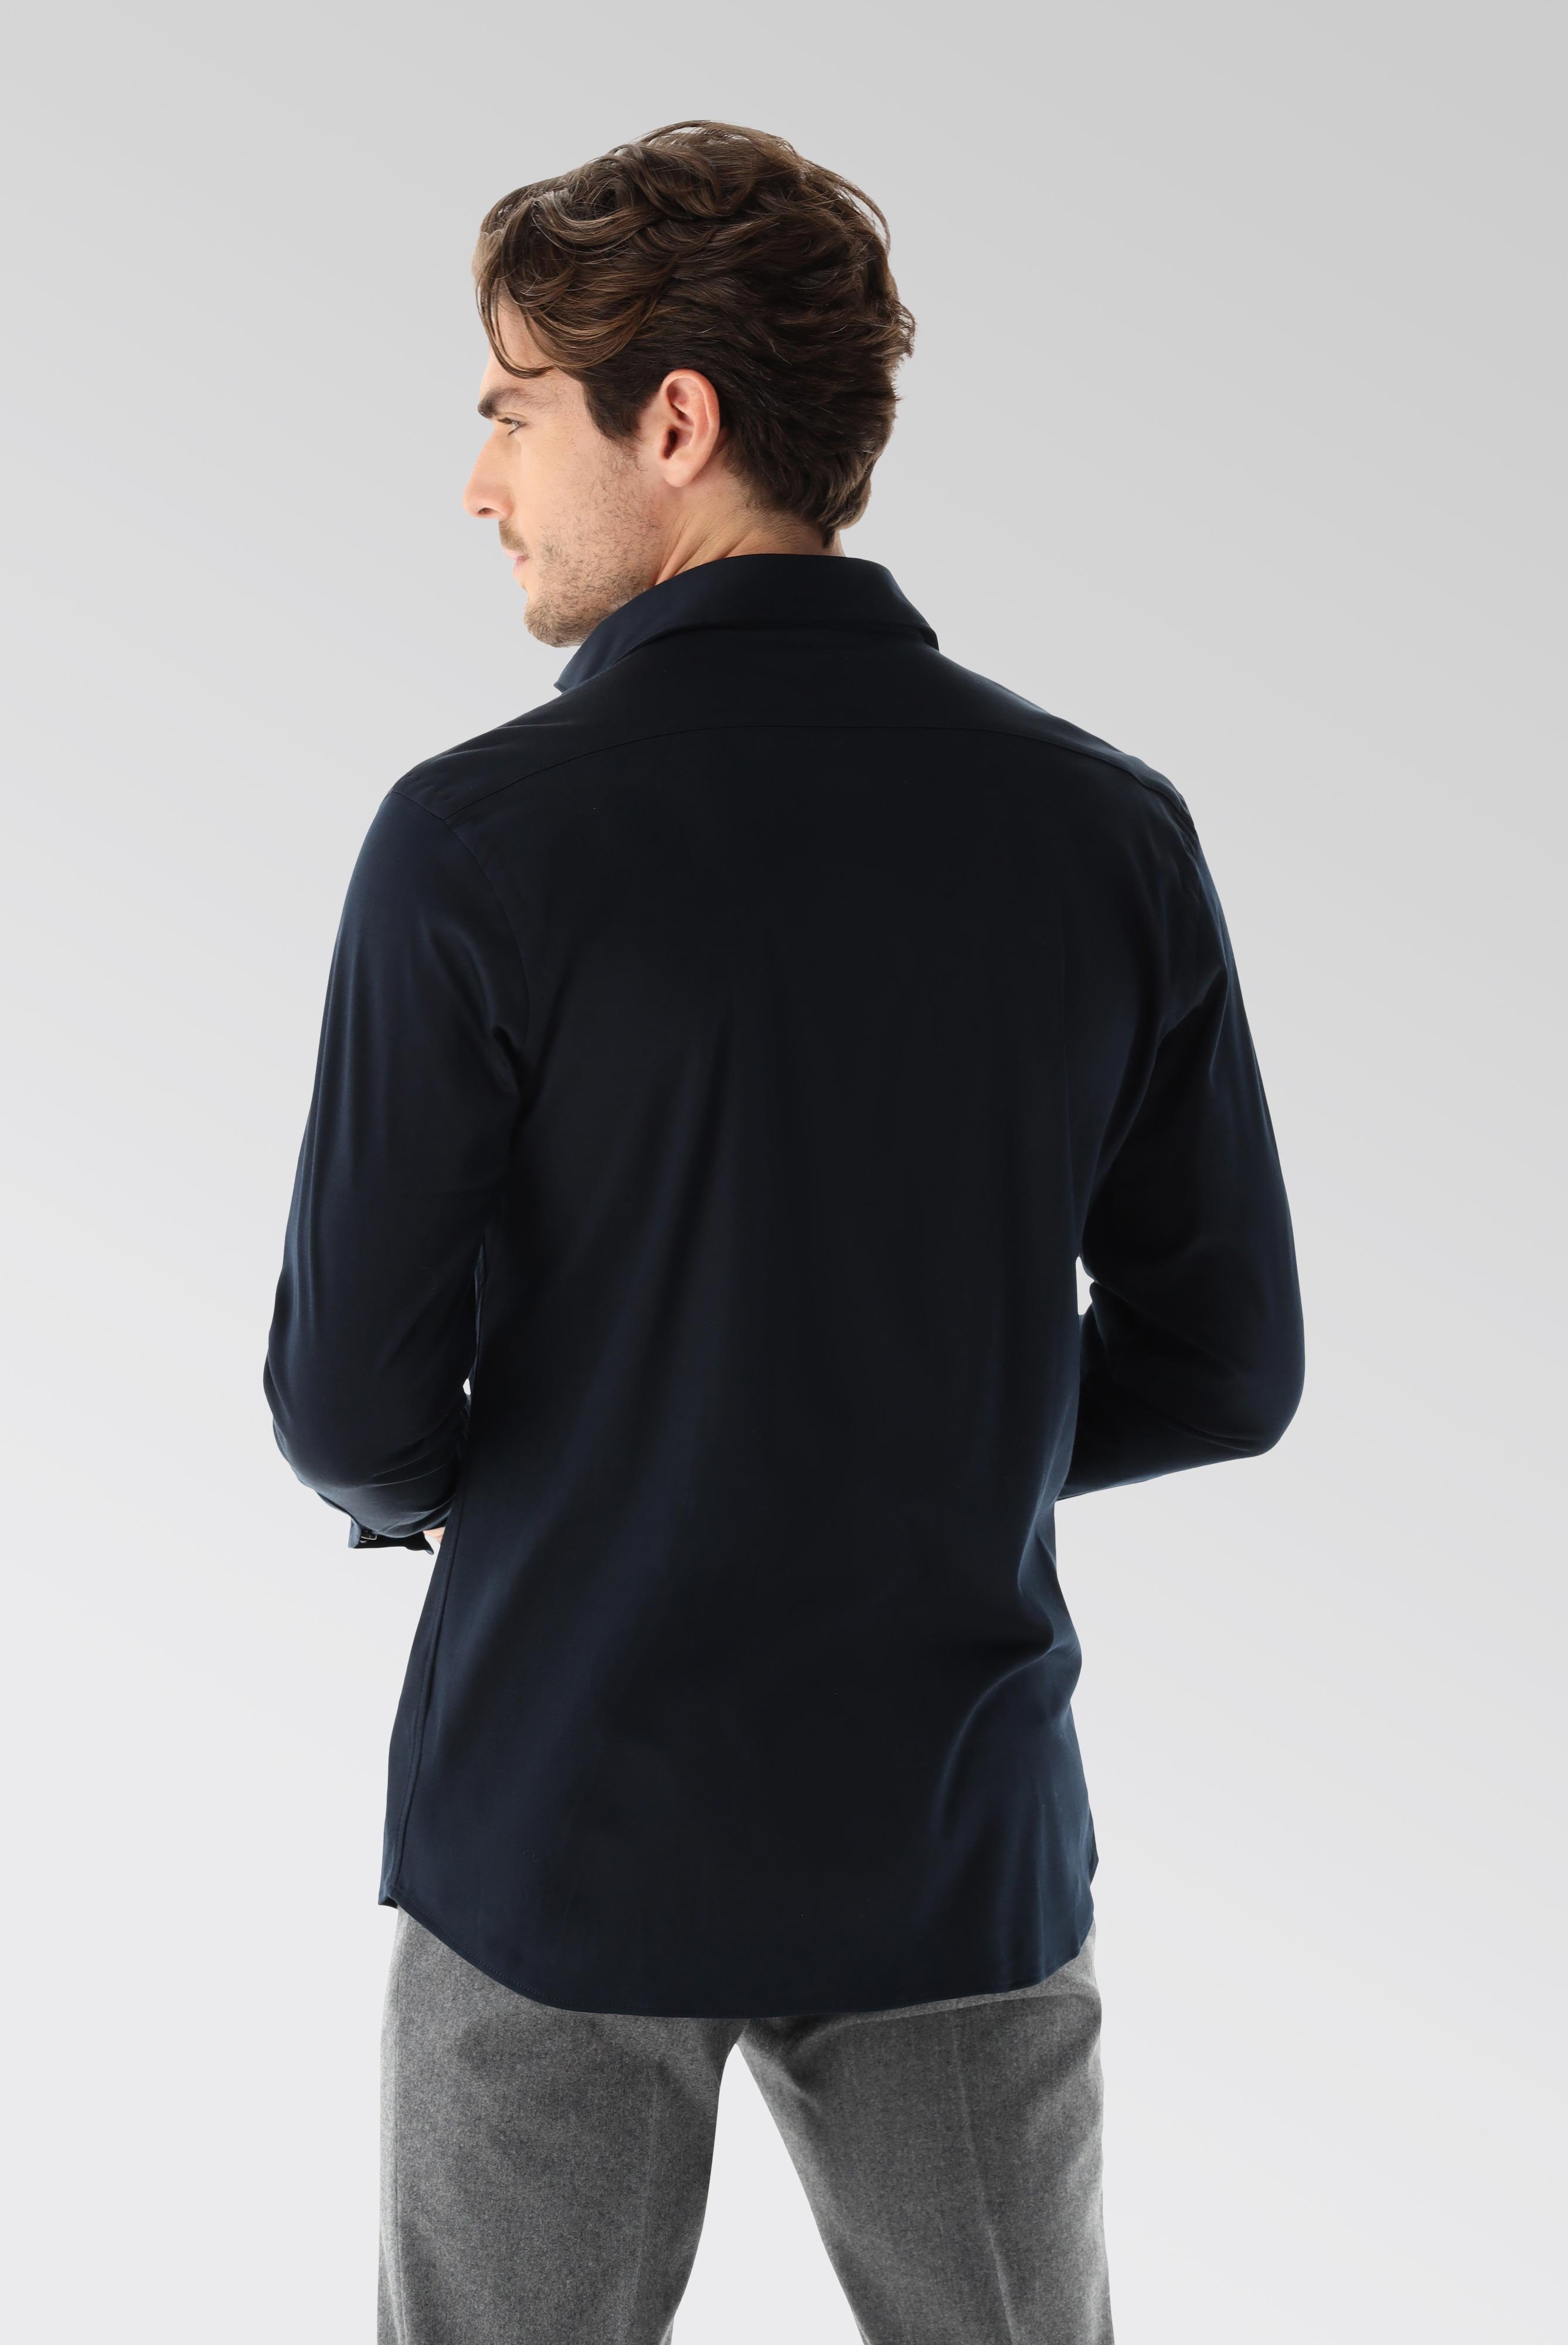 Bügelleichte Hemden+Jersey Hemd mit glänzender Optik Tailor Fit+20.1683.UC.180031.790.XL